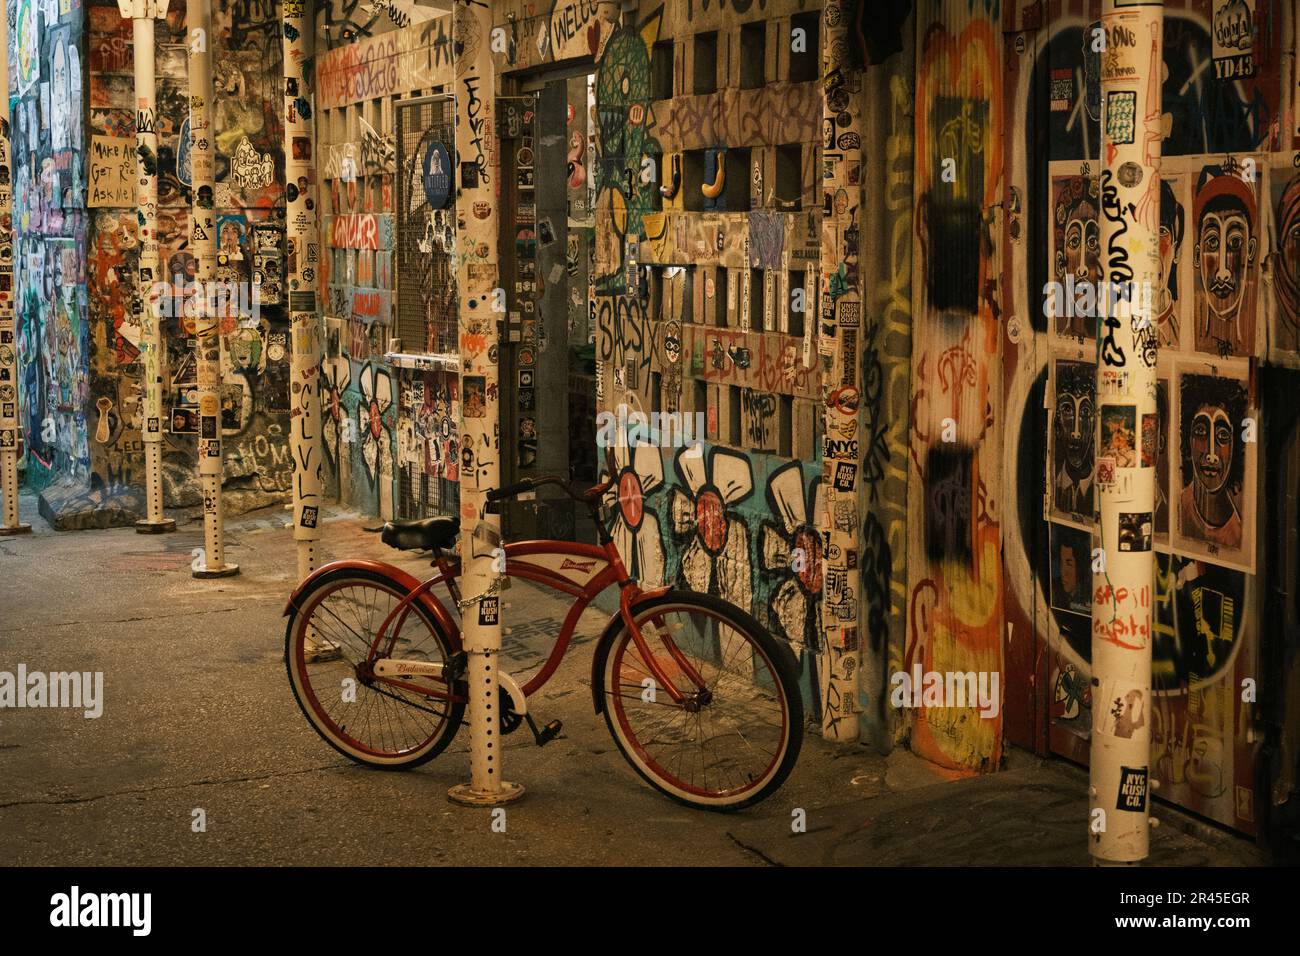 A bike in Freeman Alley, Manhattan, New York Stock Photo